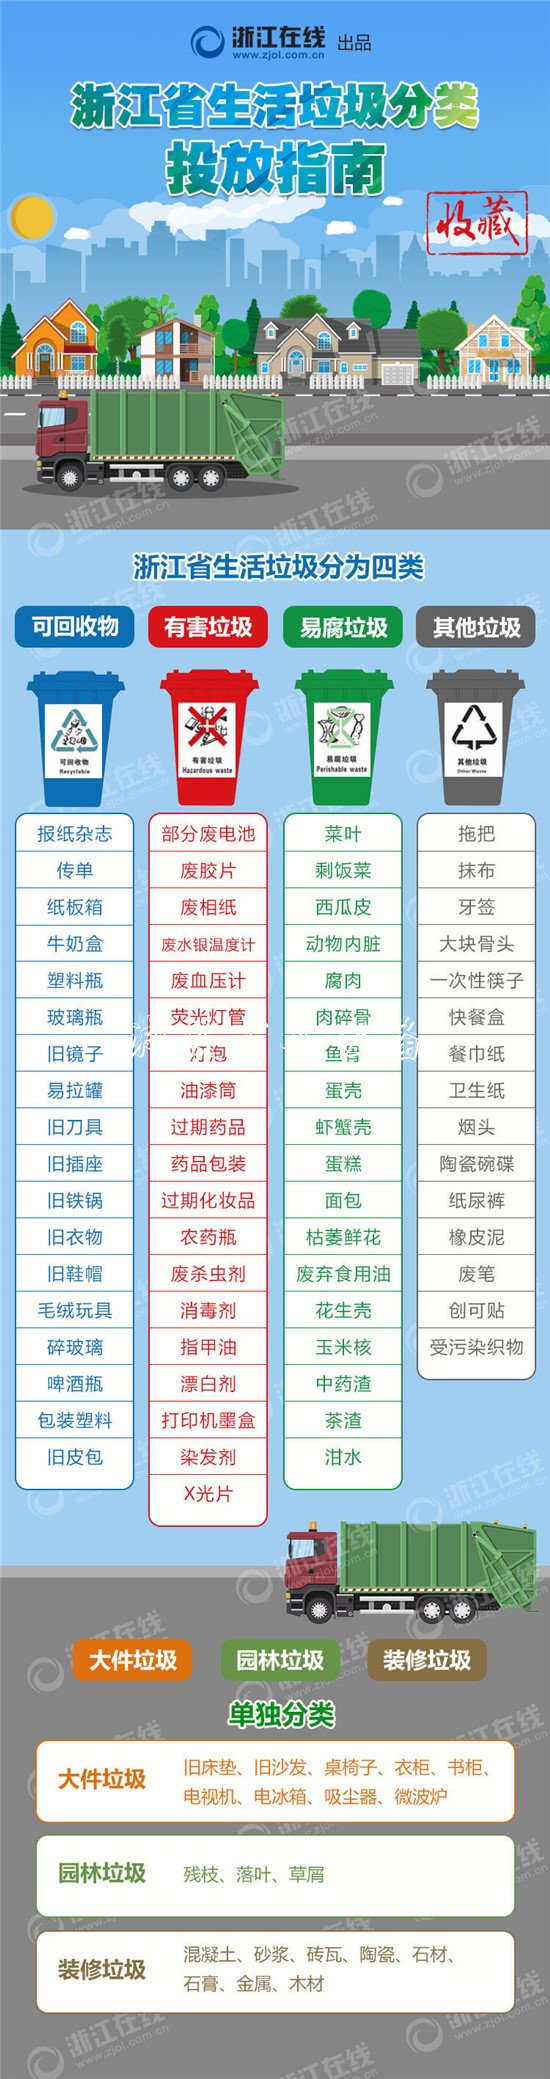 《浙江省城镇生活垃圾分类标准指路牌灯箱》11月1日正式施行 各地准备如何了呢？